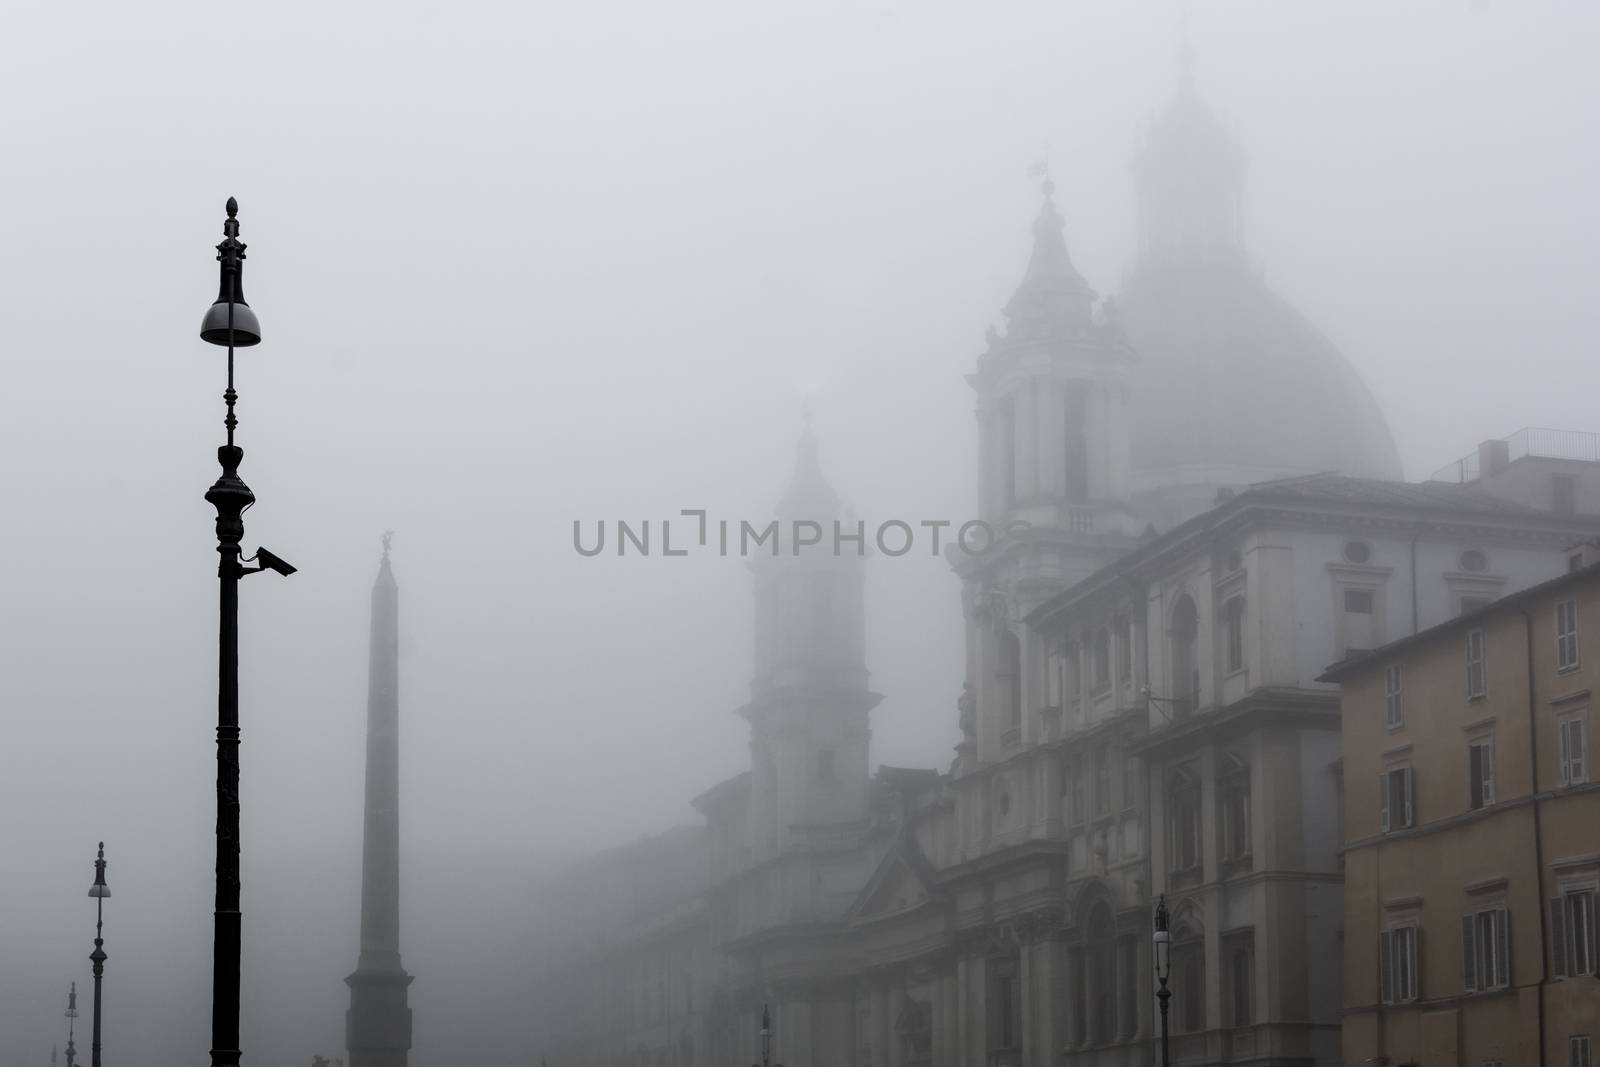 Rome in the fog by rarrarorro